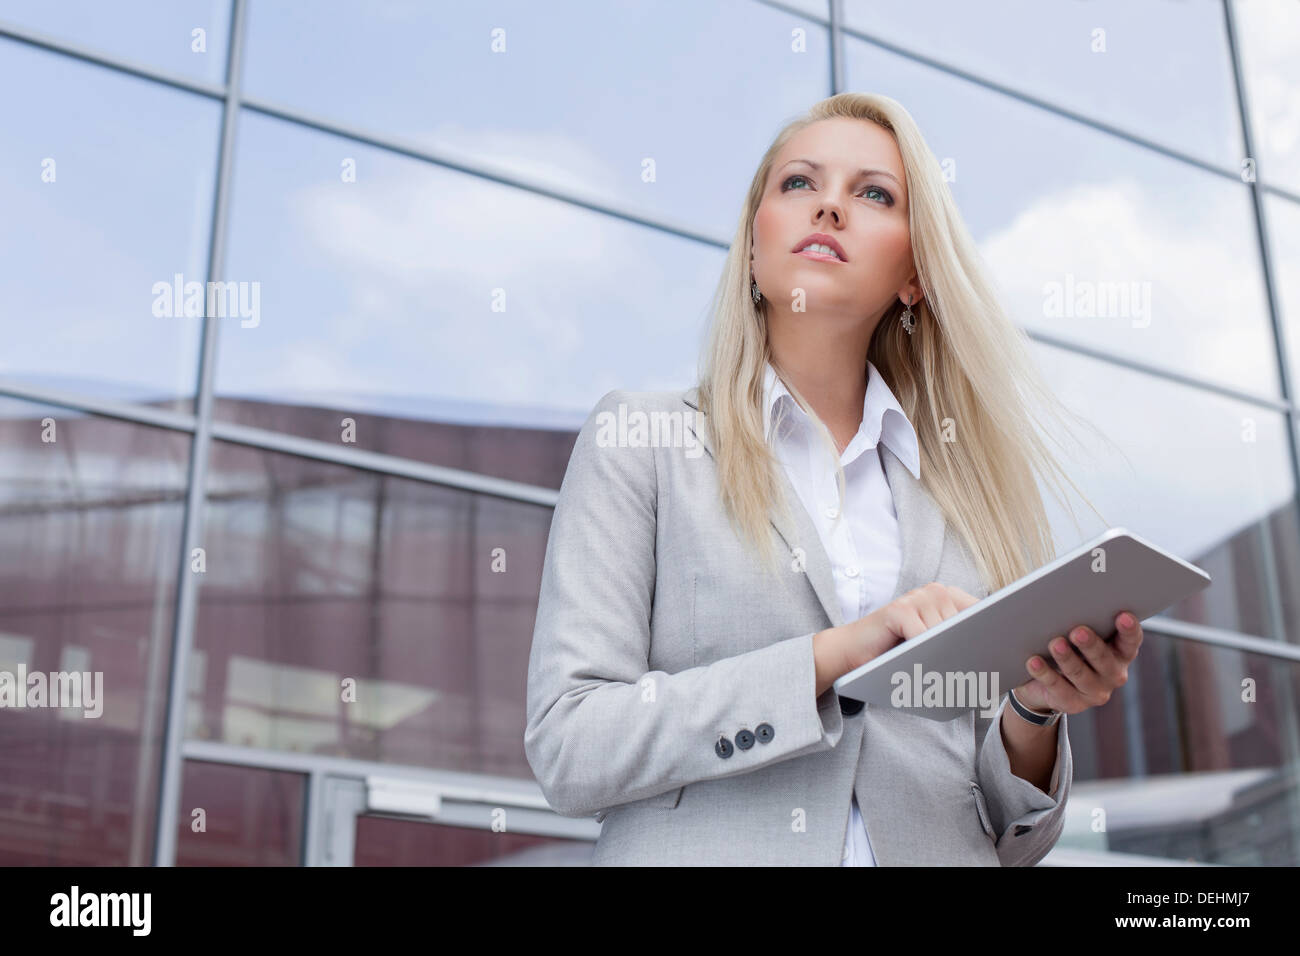 Basso angolo di visione imprenditrice azienda digitale compressa mentre guarda lontano contro l edificio per uffici Foto Stock